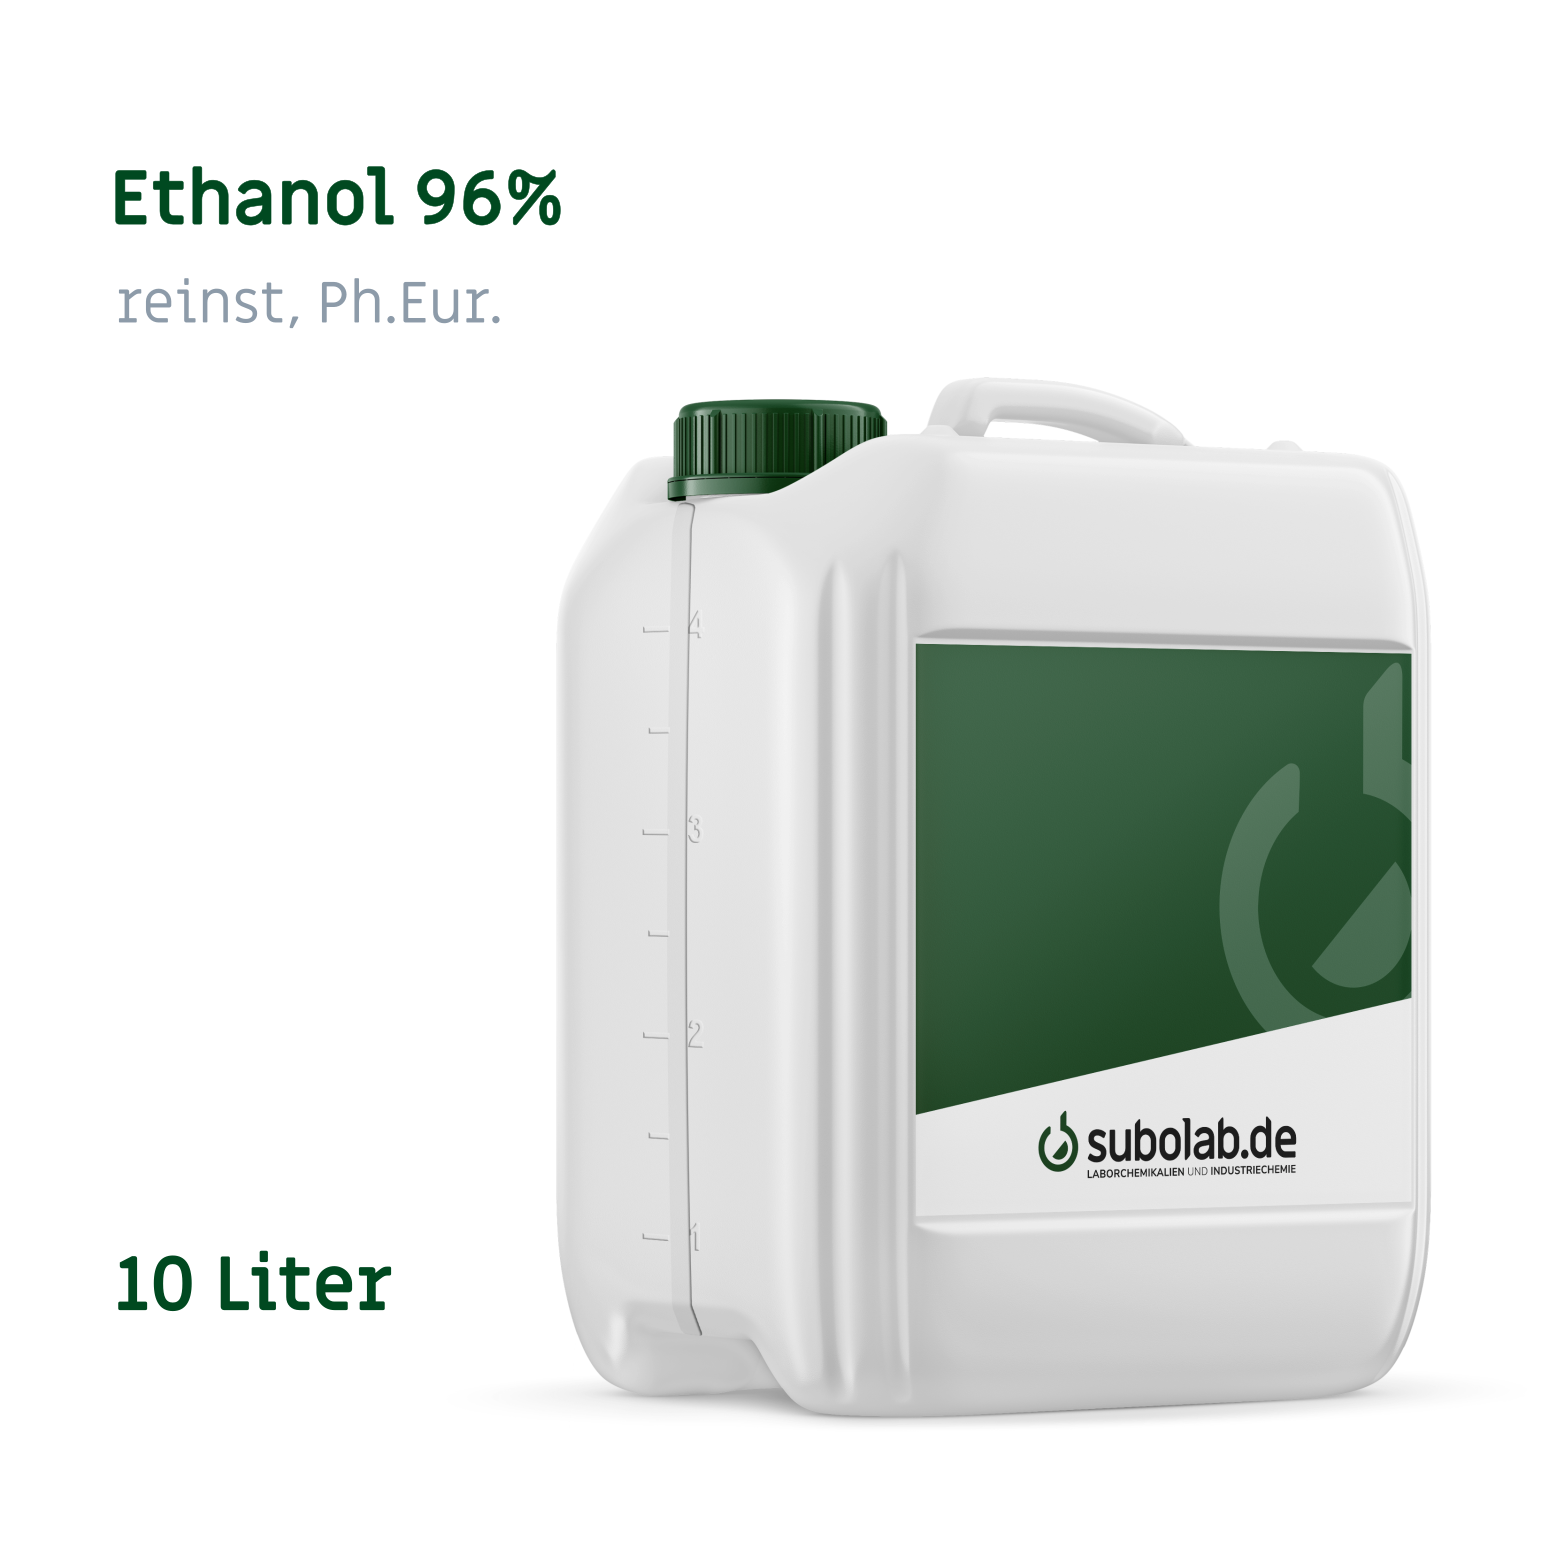 Bild von Ethanol 96% reinst, Ph.Eur. (10 Liter)